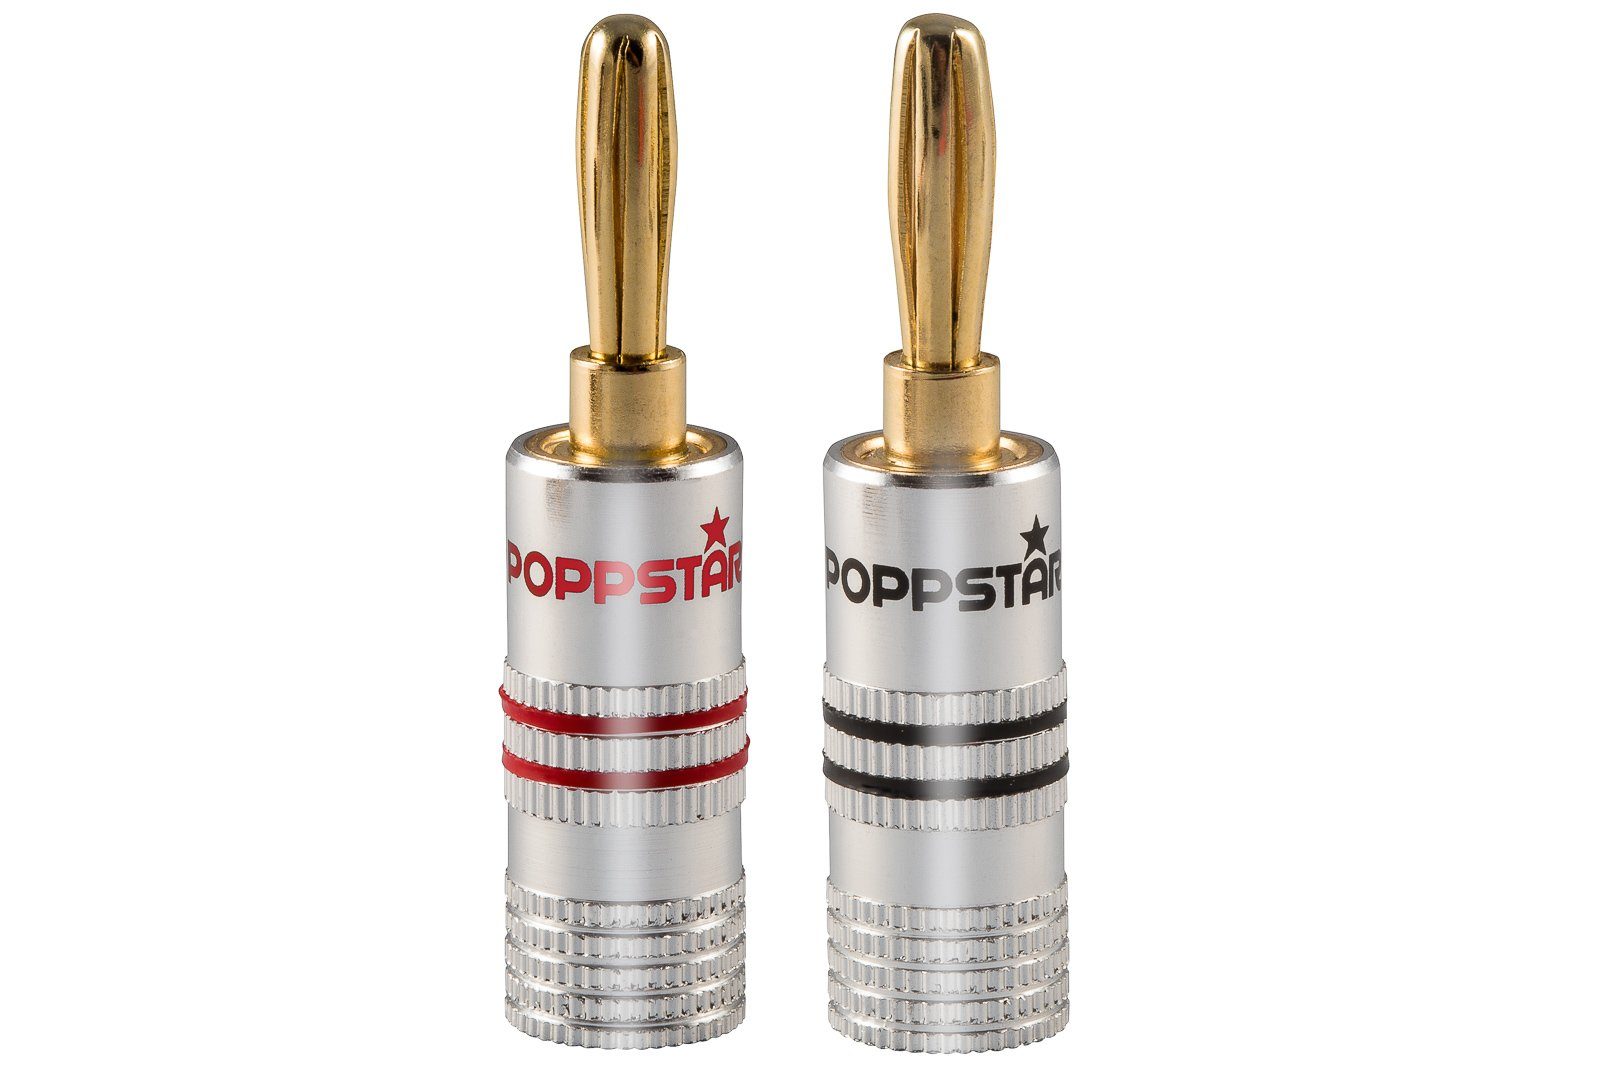 Poppstar High End Bananenstecker für Lautsprecherkabel (bis 6 mm)  Audio-Adapter, für Lautsprecher, AV Receiver (Kontakte vergoldet, 1  schwarz, 1 rot)